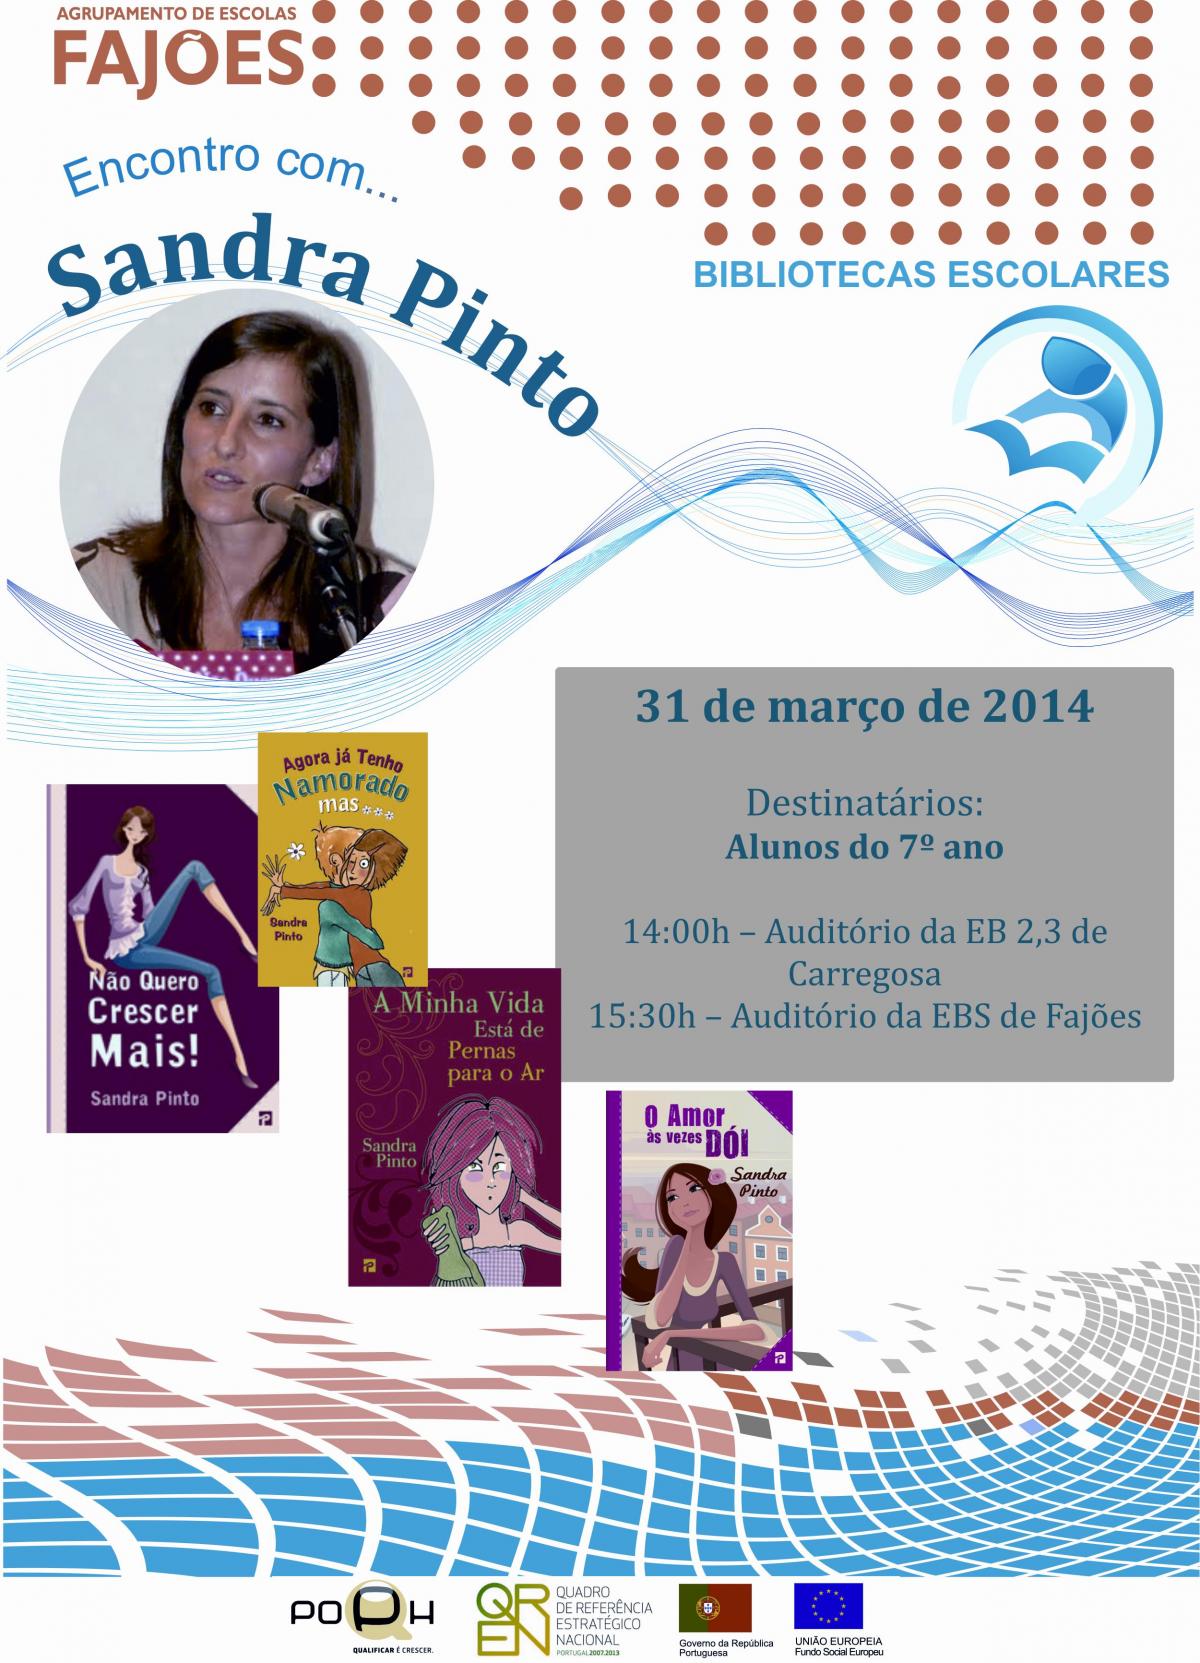 Encontro com... Sandra Pinto